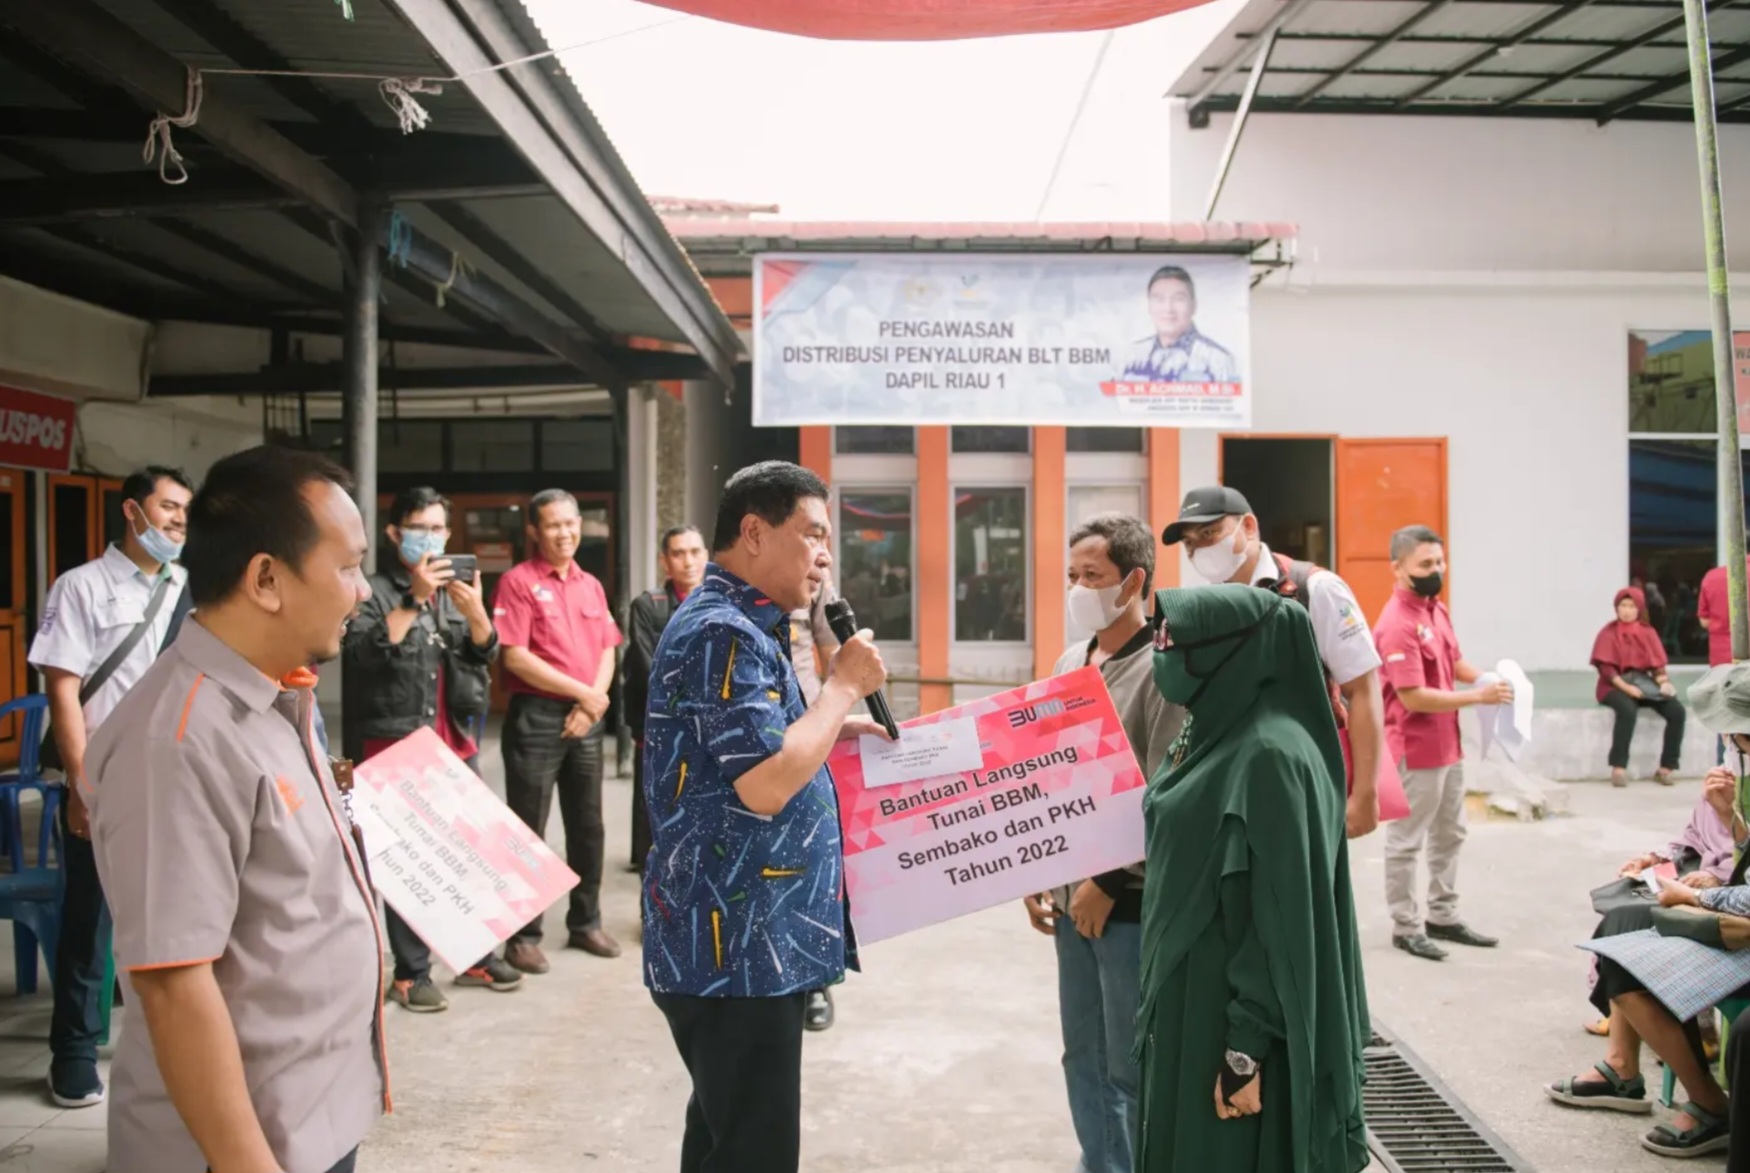 Anggota DPR RI Achmad Hadiri Penyerahan BLT BBM, Harapkan Penerima Tepat Sasaran